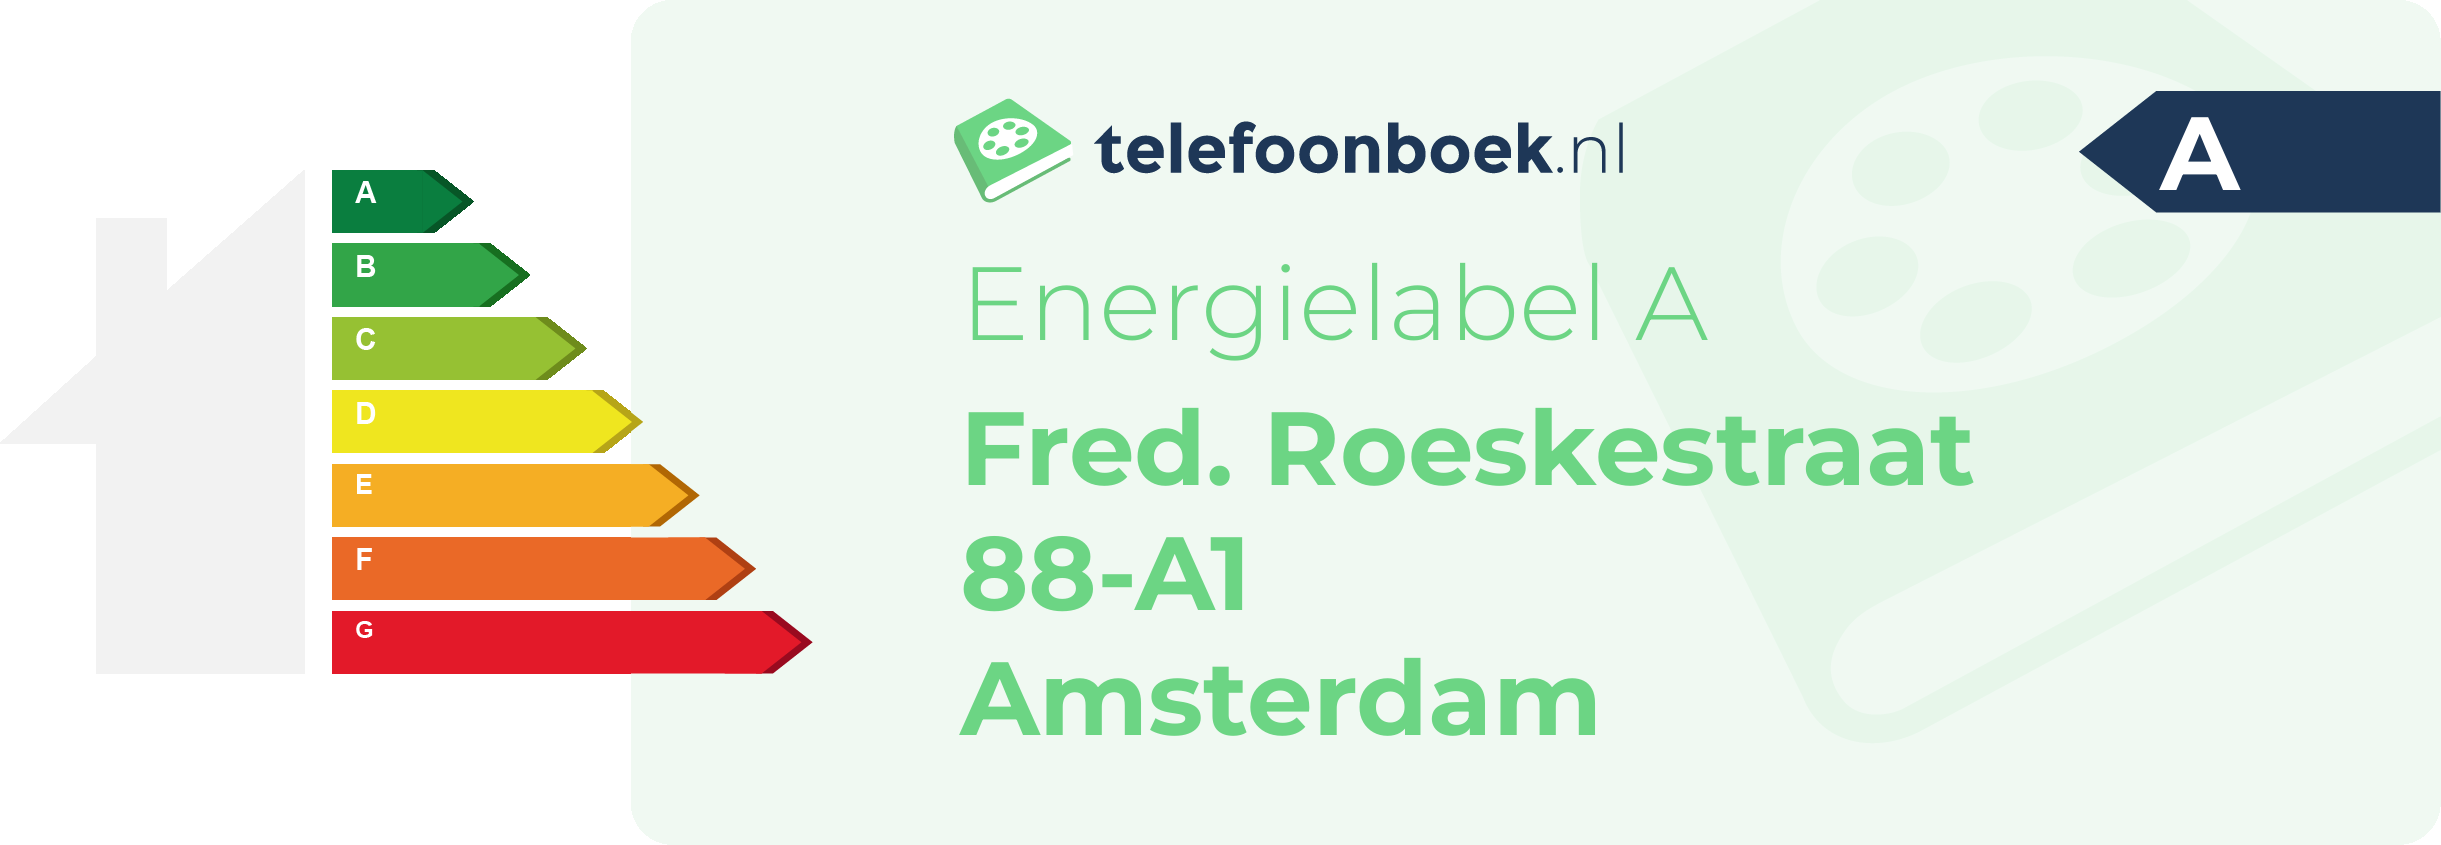 Energielabel Fred. Roeskestraat 88-A1 Amsterdam